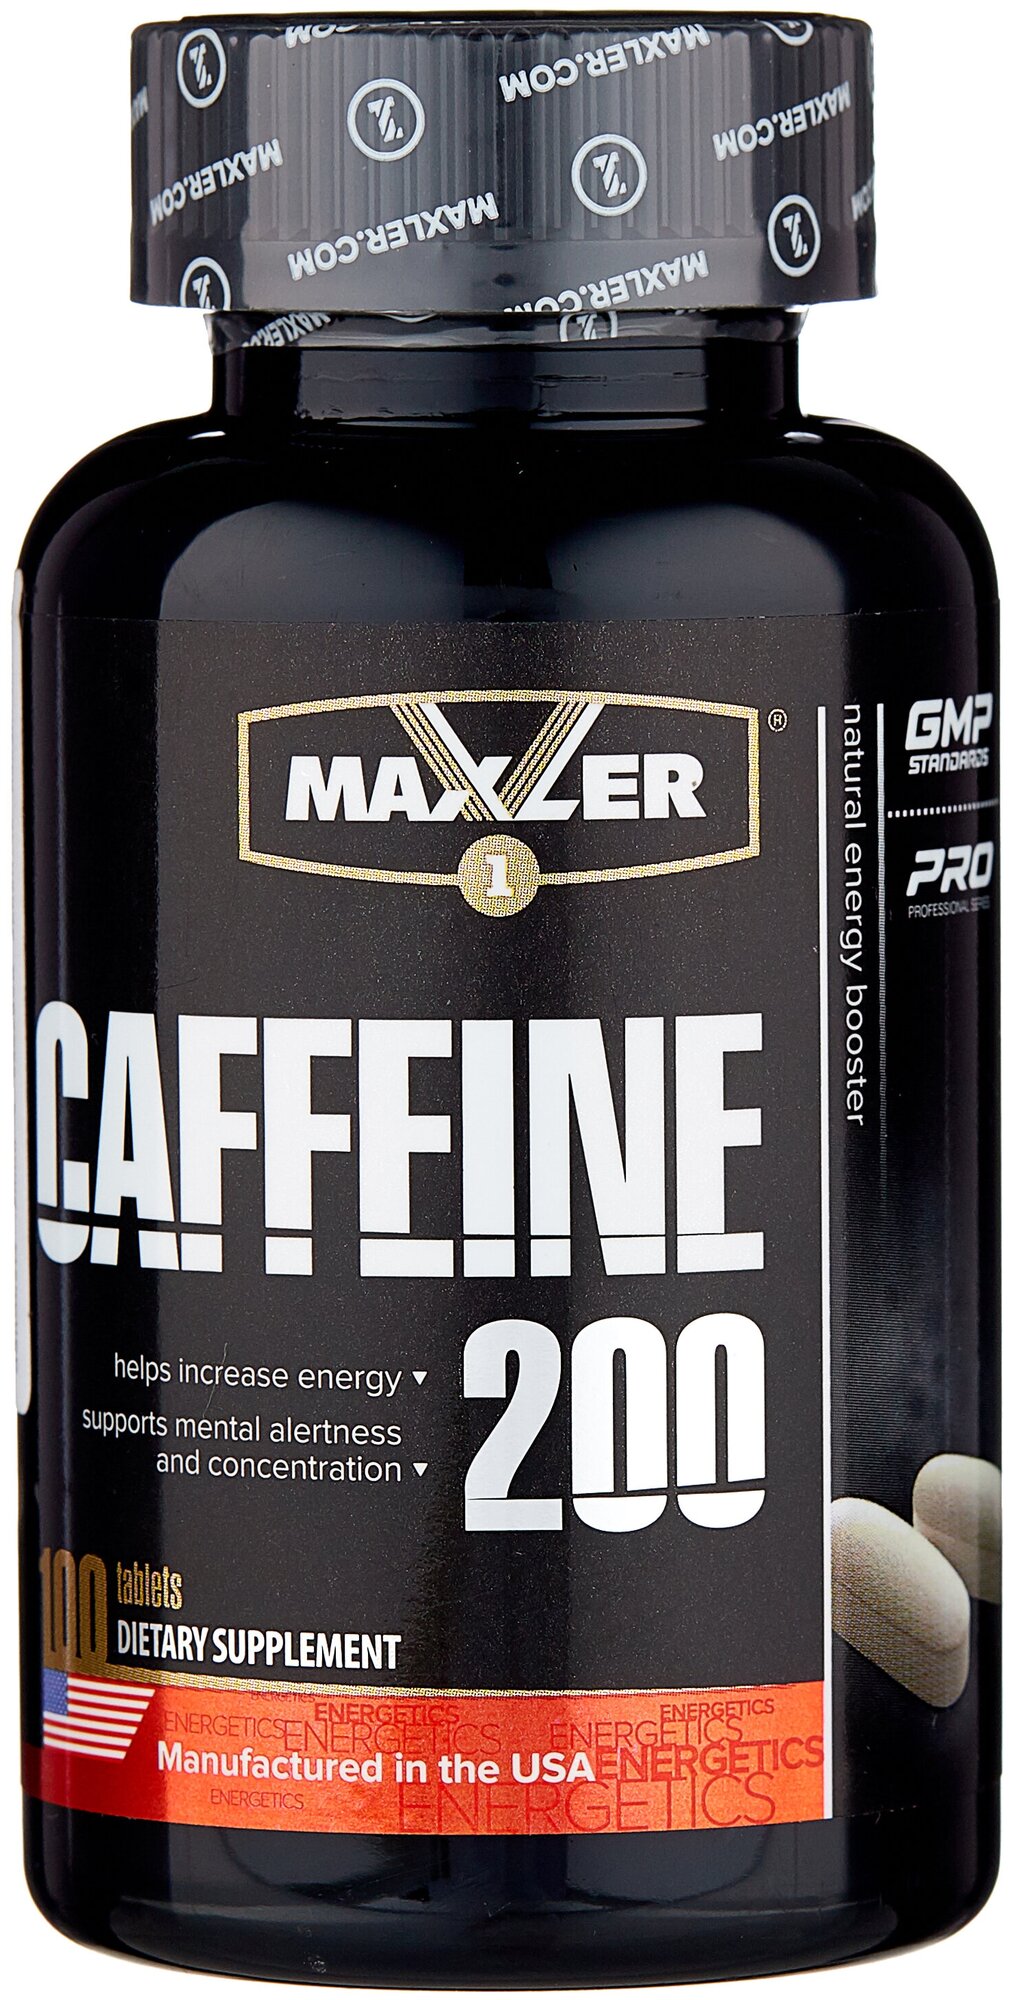 Предтренировочный комплекс Maxler Caffeine 200 (100 шт.)